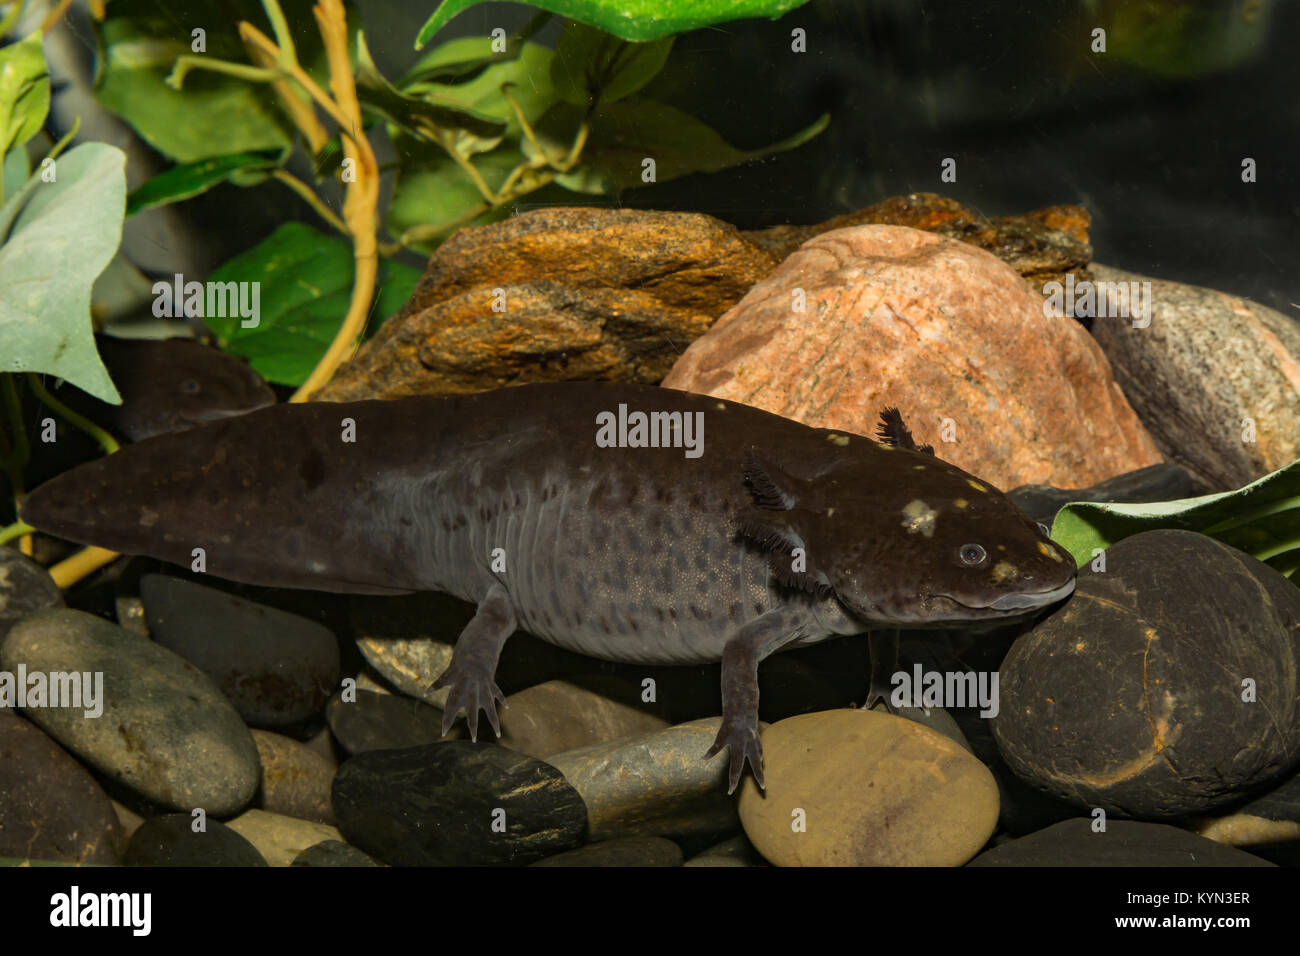 A close up of a Mexican Axolotl Stock Photo